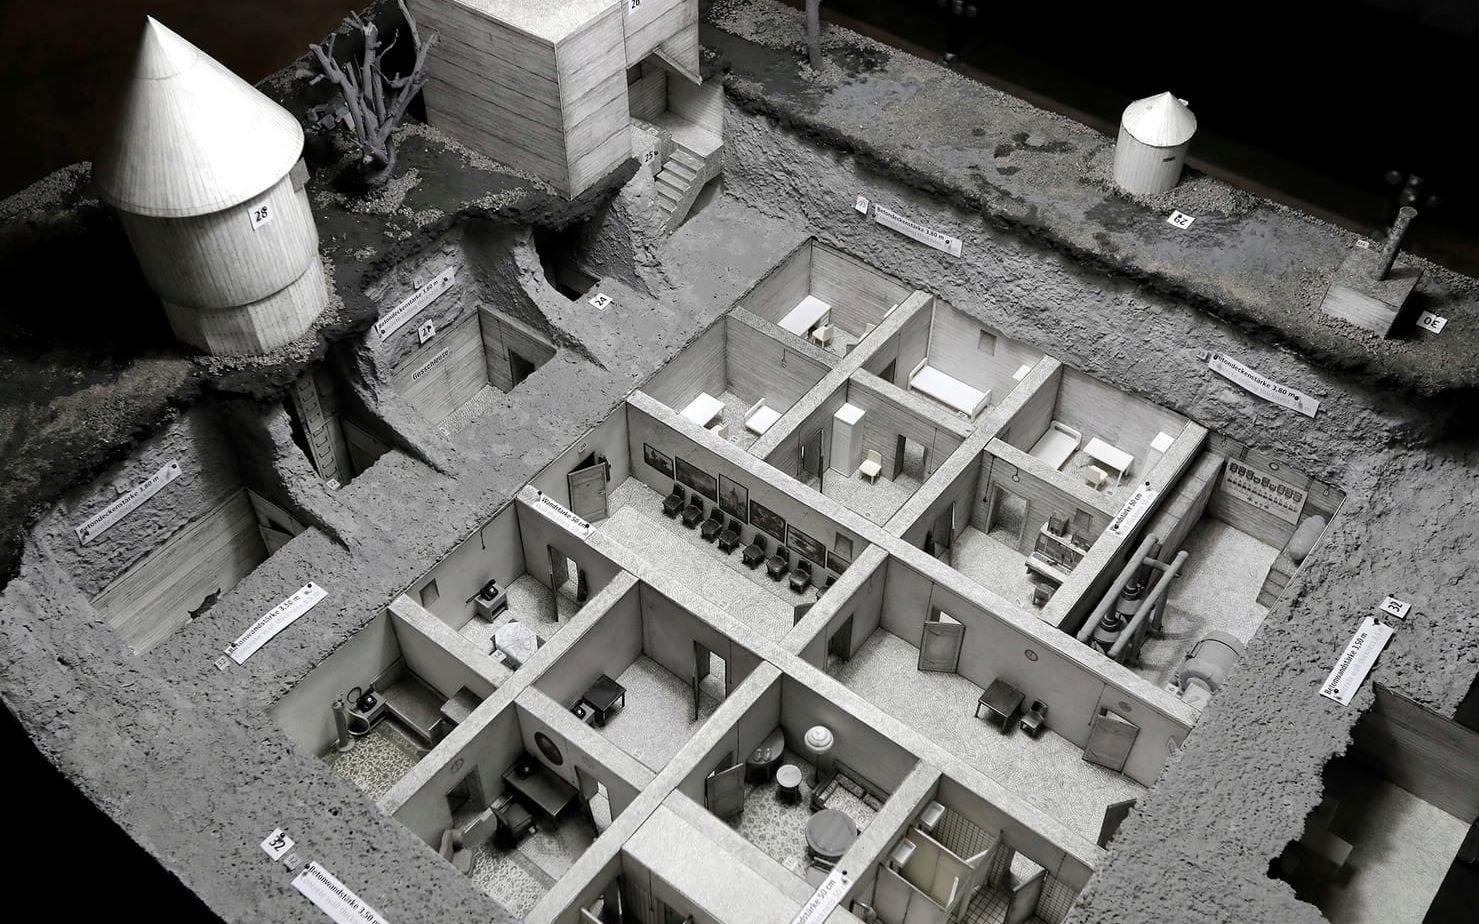 En modell av bunkern som Adolf Hitler spenderade sina sista veckor i, och där telefonen hittades. BILD: TT ARKIV